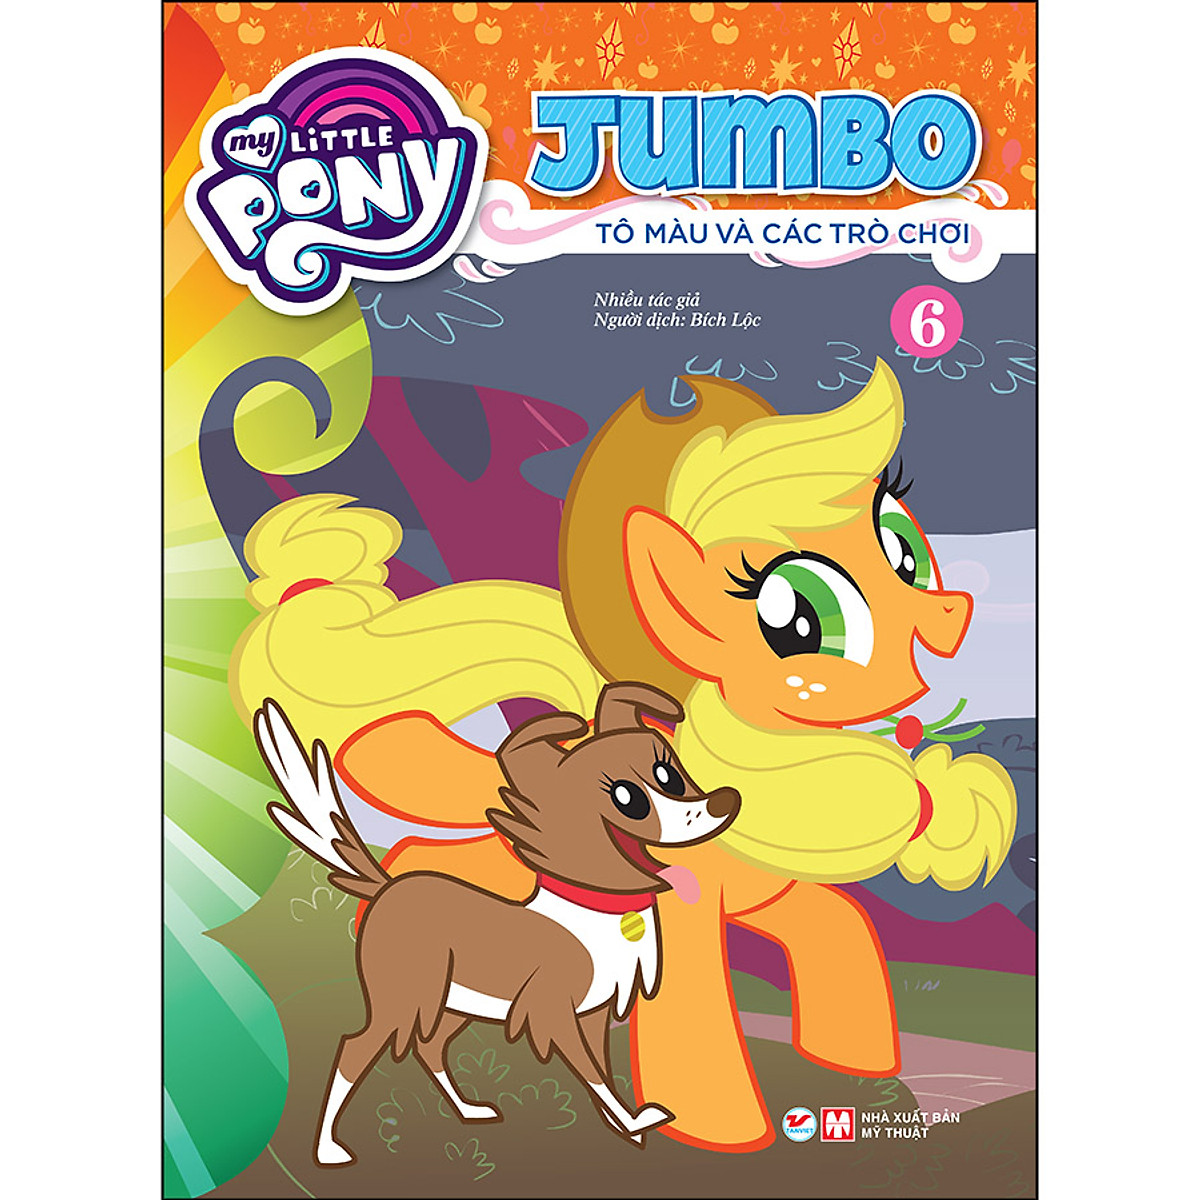 Pony  Jumbo Tô Màu Và Các Trò Chơi Tập 2 chính hãng giá rẻ